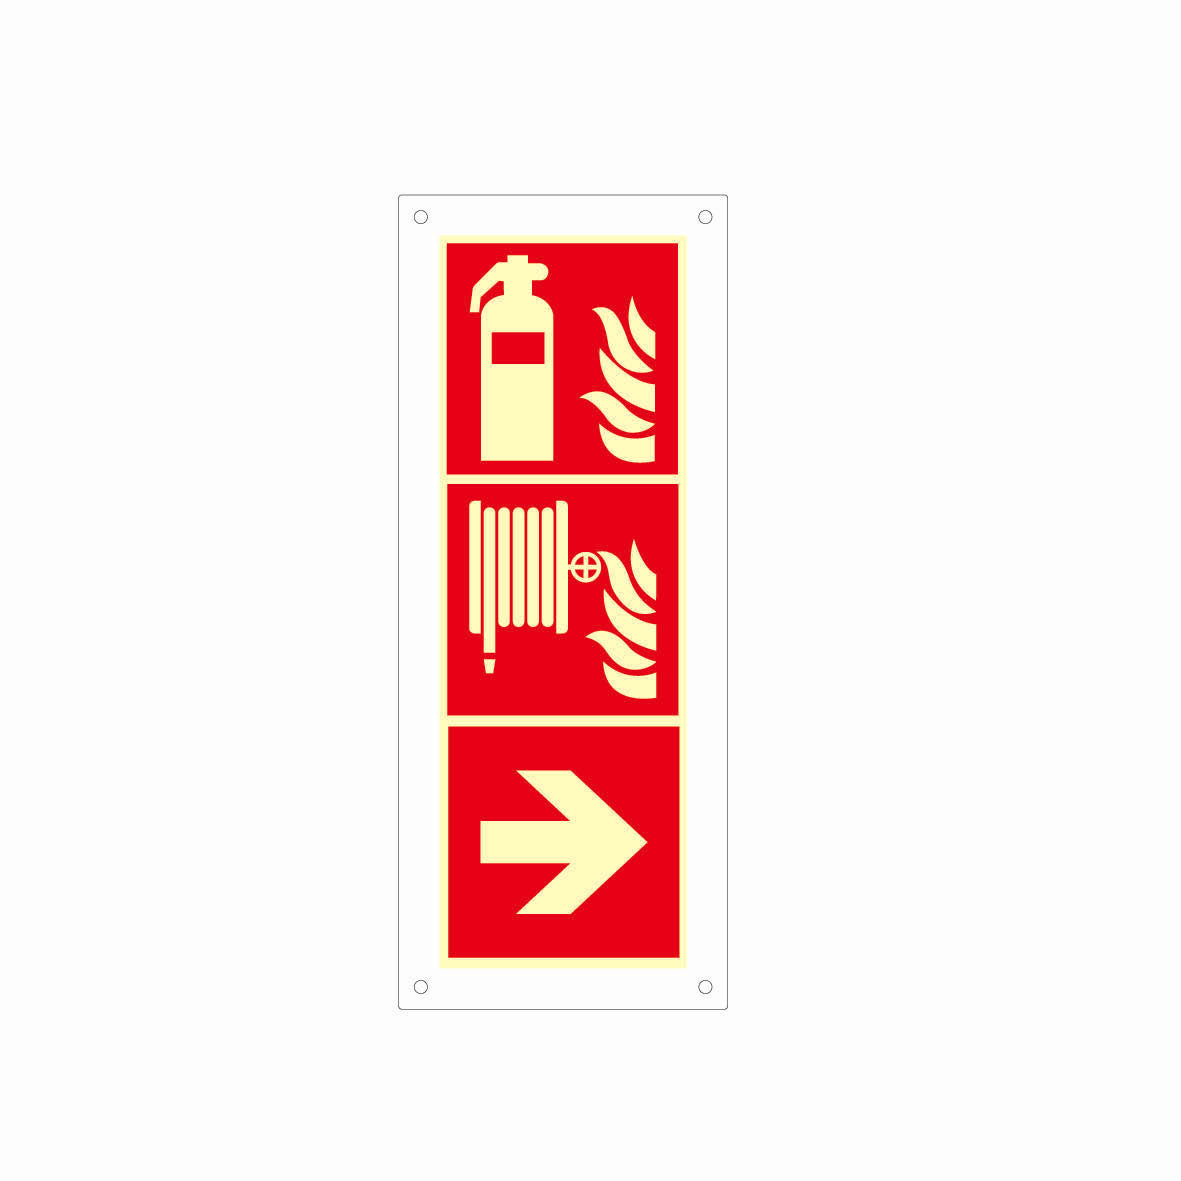 Wandschild Plexiglas, Rettungs- und Brandschutzzeichen, nachleuchtend, 495 x 200 mm (3x150/150 mm), gemäss Logobibliothek